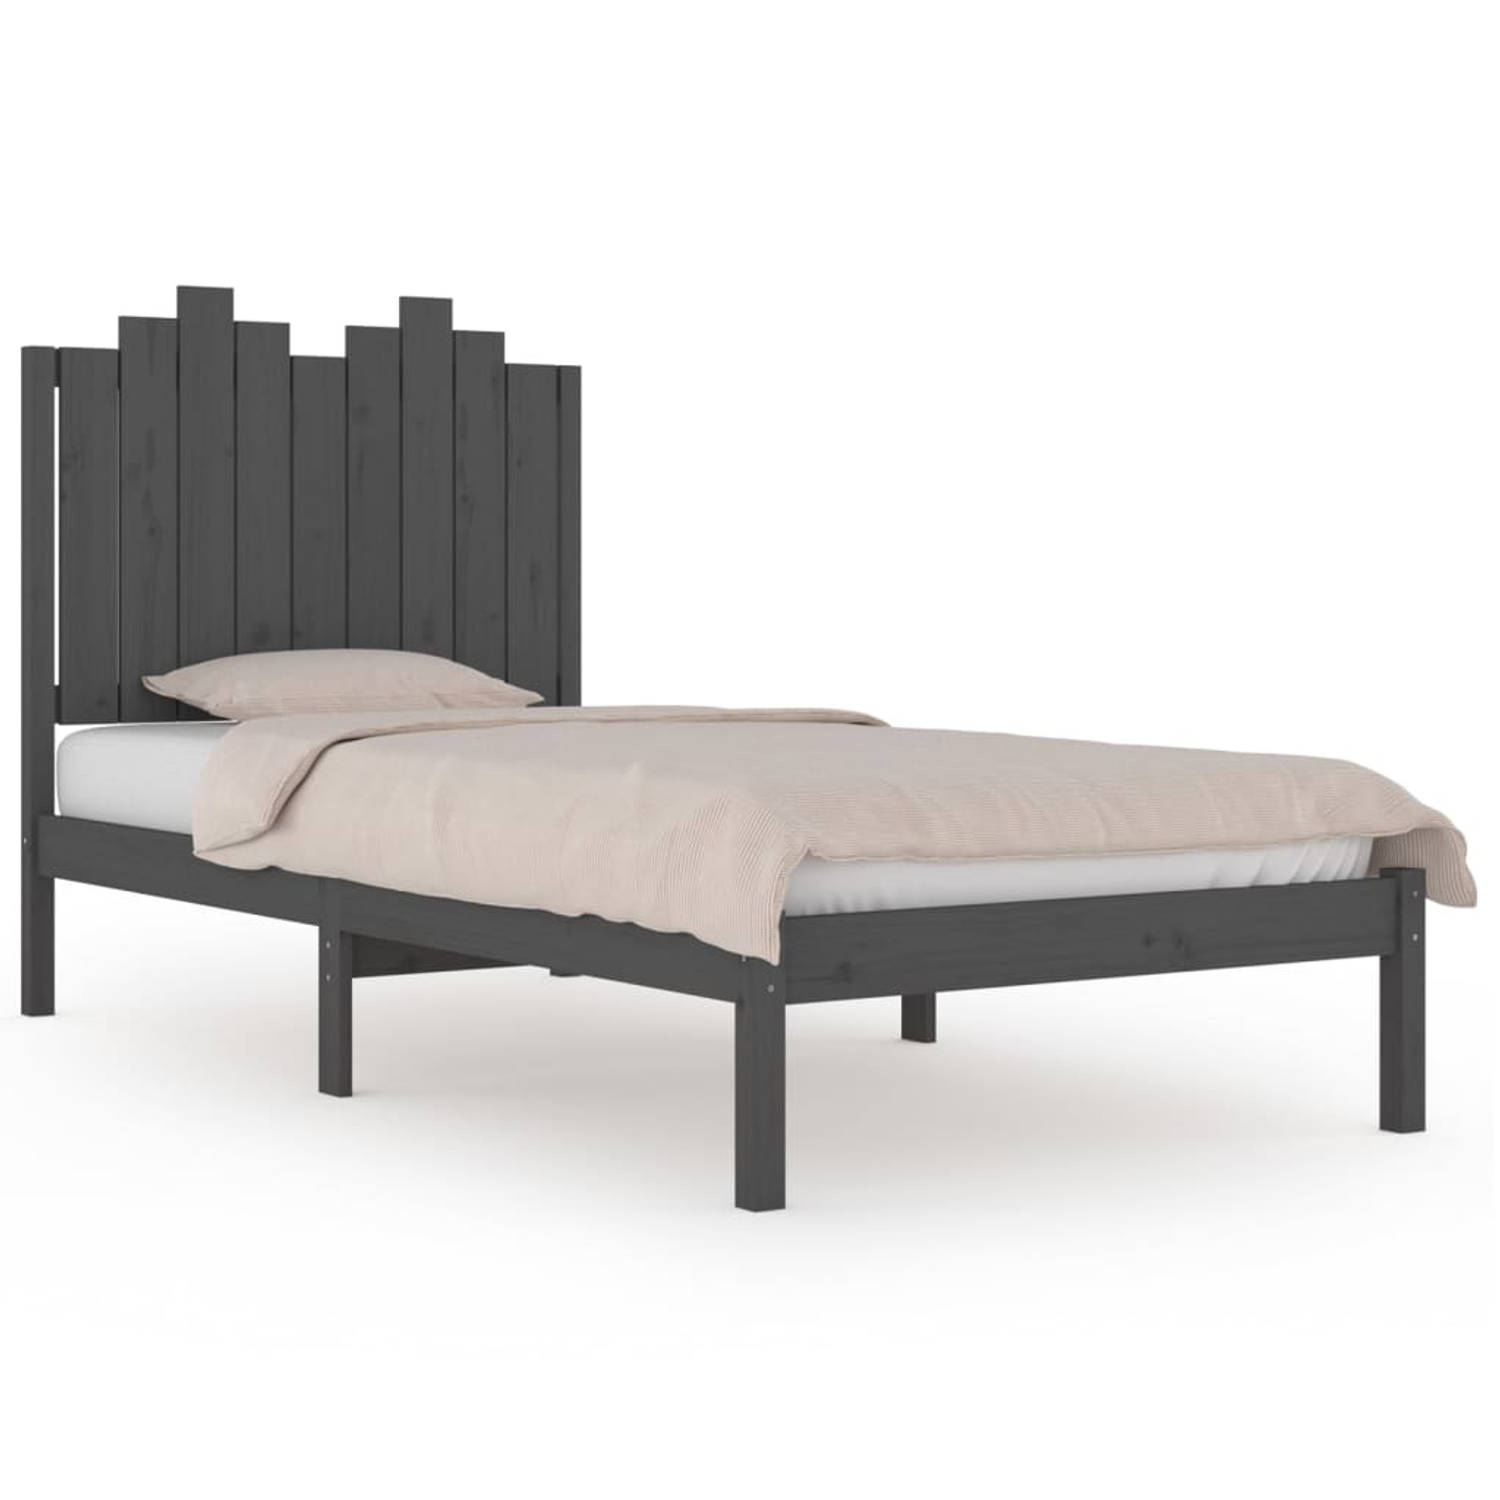 The Living Store Bedframe massief grenenhout grijs 90x200 cm - Bedframe - Bedframes - Eenpersoonsbed - Bed - Bedombouw - Enkel Bed - Frame - Bed Frame - Ledikant - Houten Bedframe